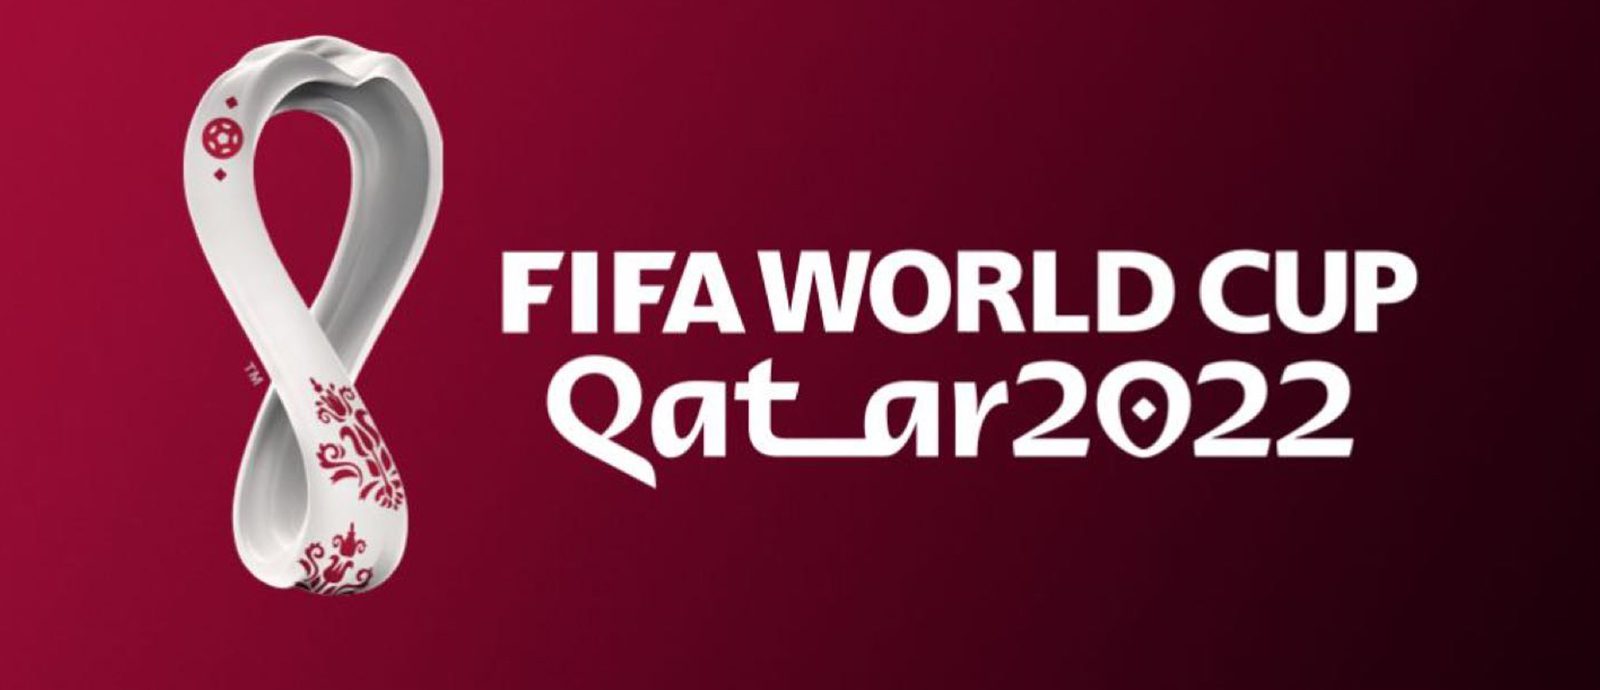 مونديال كأس العالم في قطر 2022_999999874568974589764333333